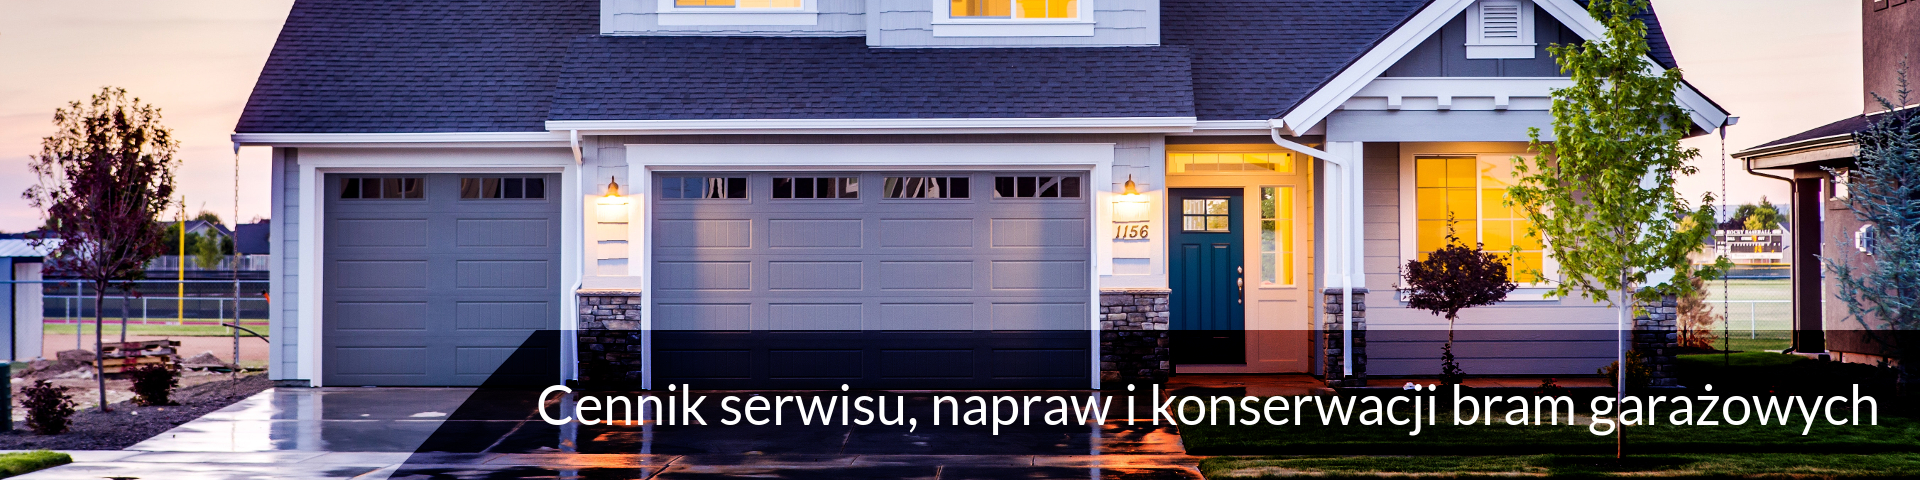 Cennik serwisu, napraw i konserwacji bram garażowych - ROLETEO Serwis rolet, okien, drzwi i bram garażowych